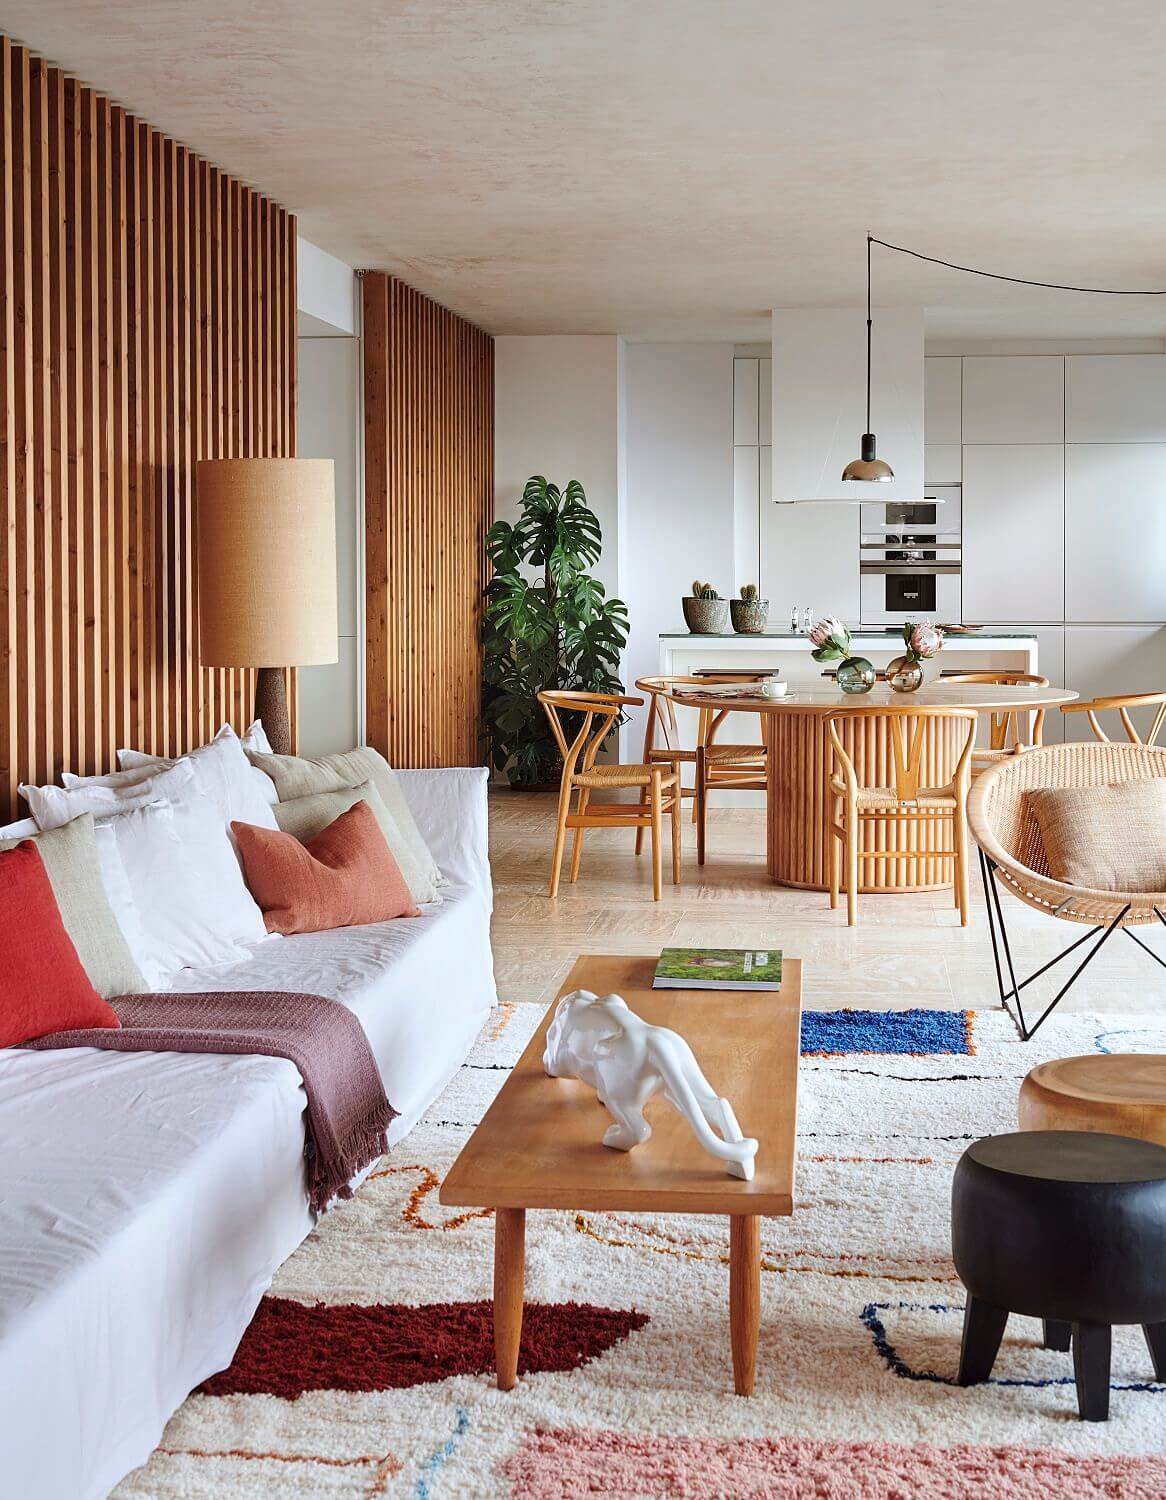 Los muebles clásicos actualizados siempre funcionan para combinar estilos decorativos.